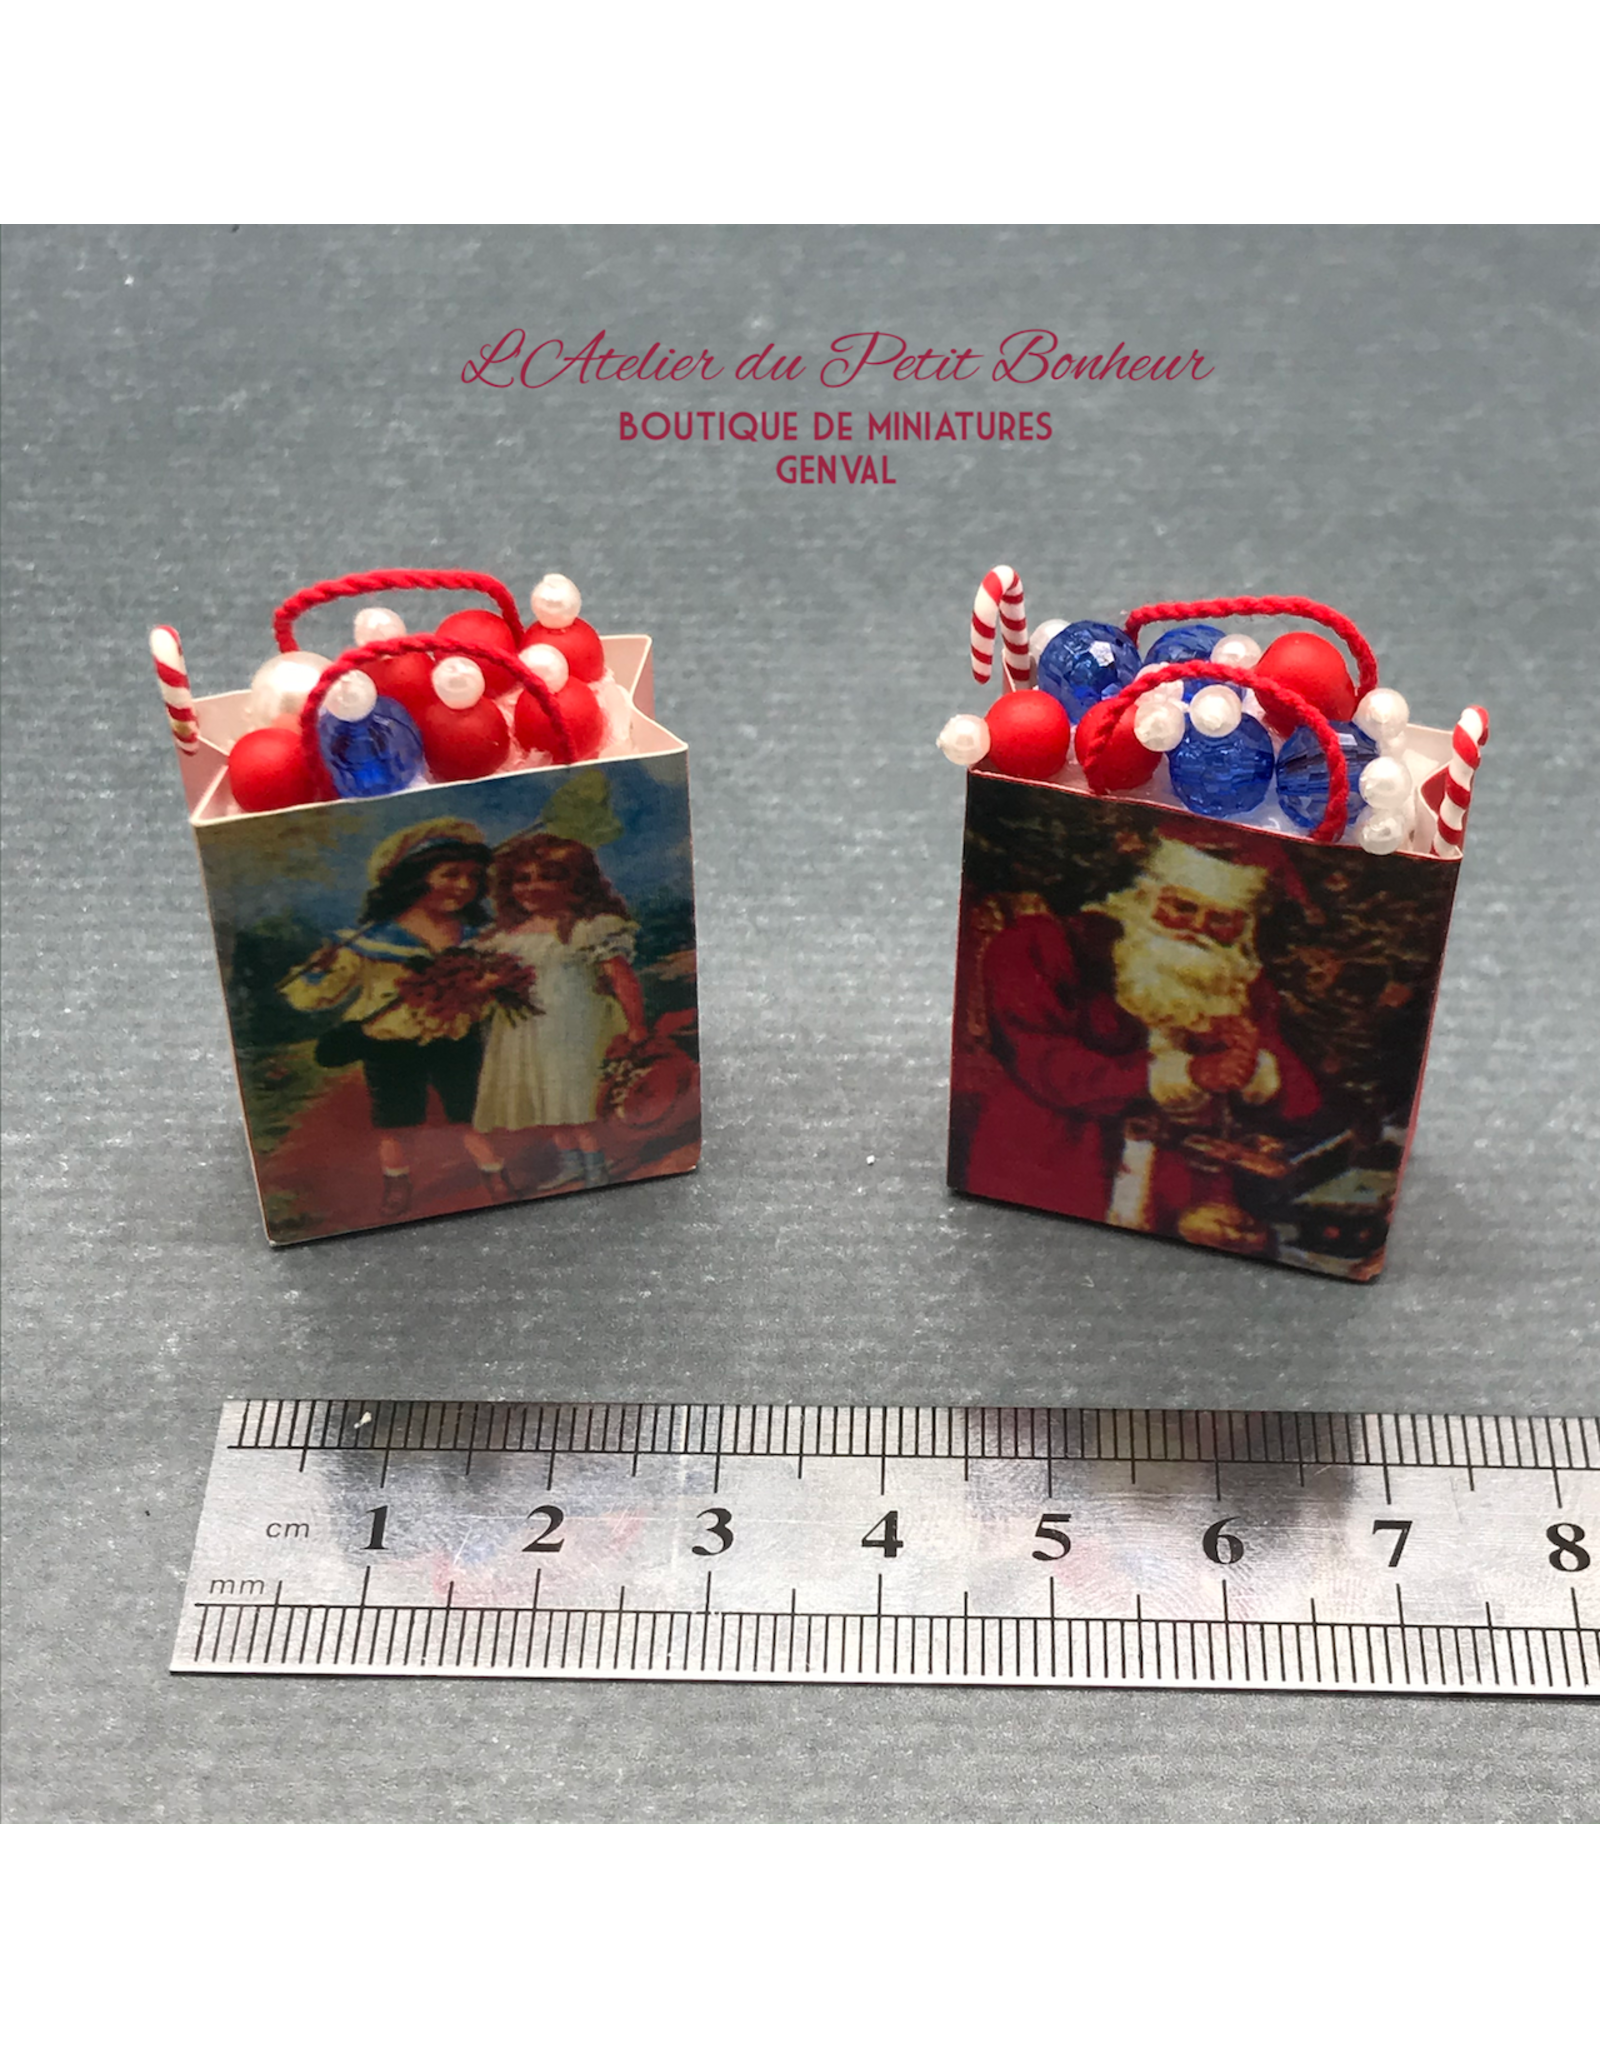 2 sacs cadeaux de Noël miniature 1:12